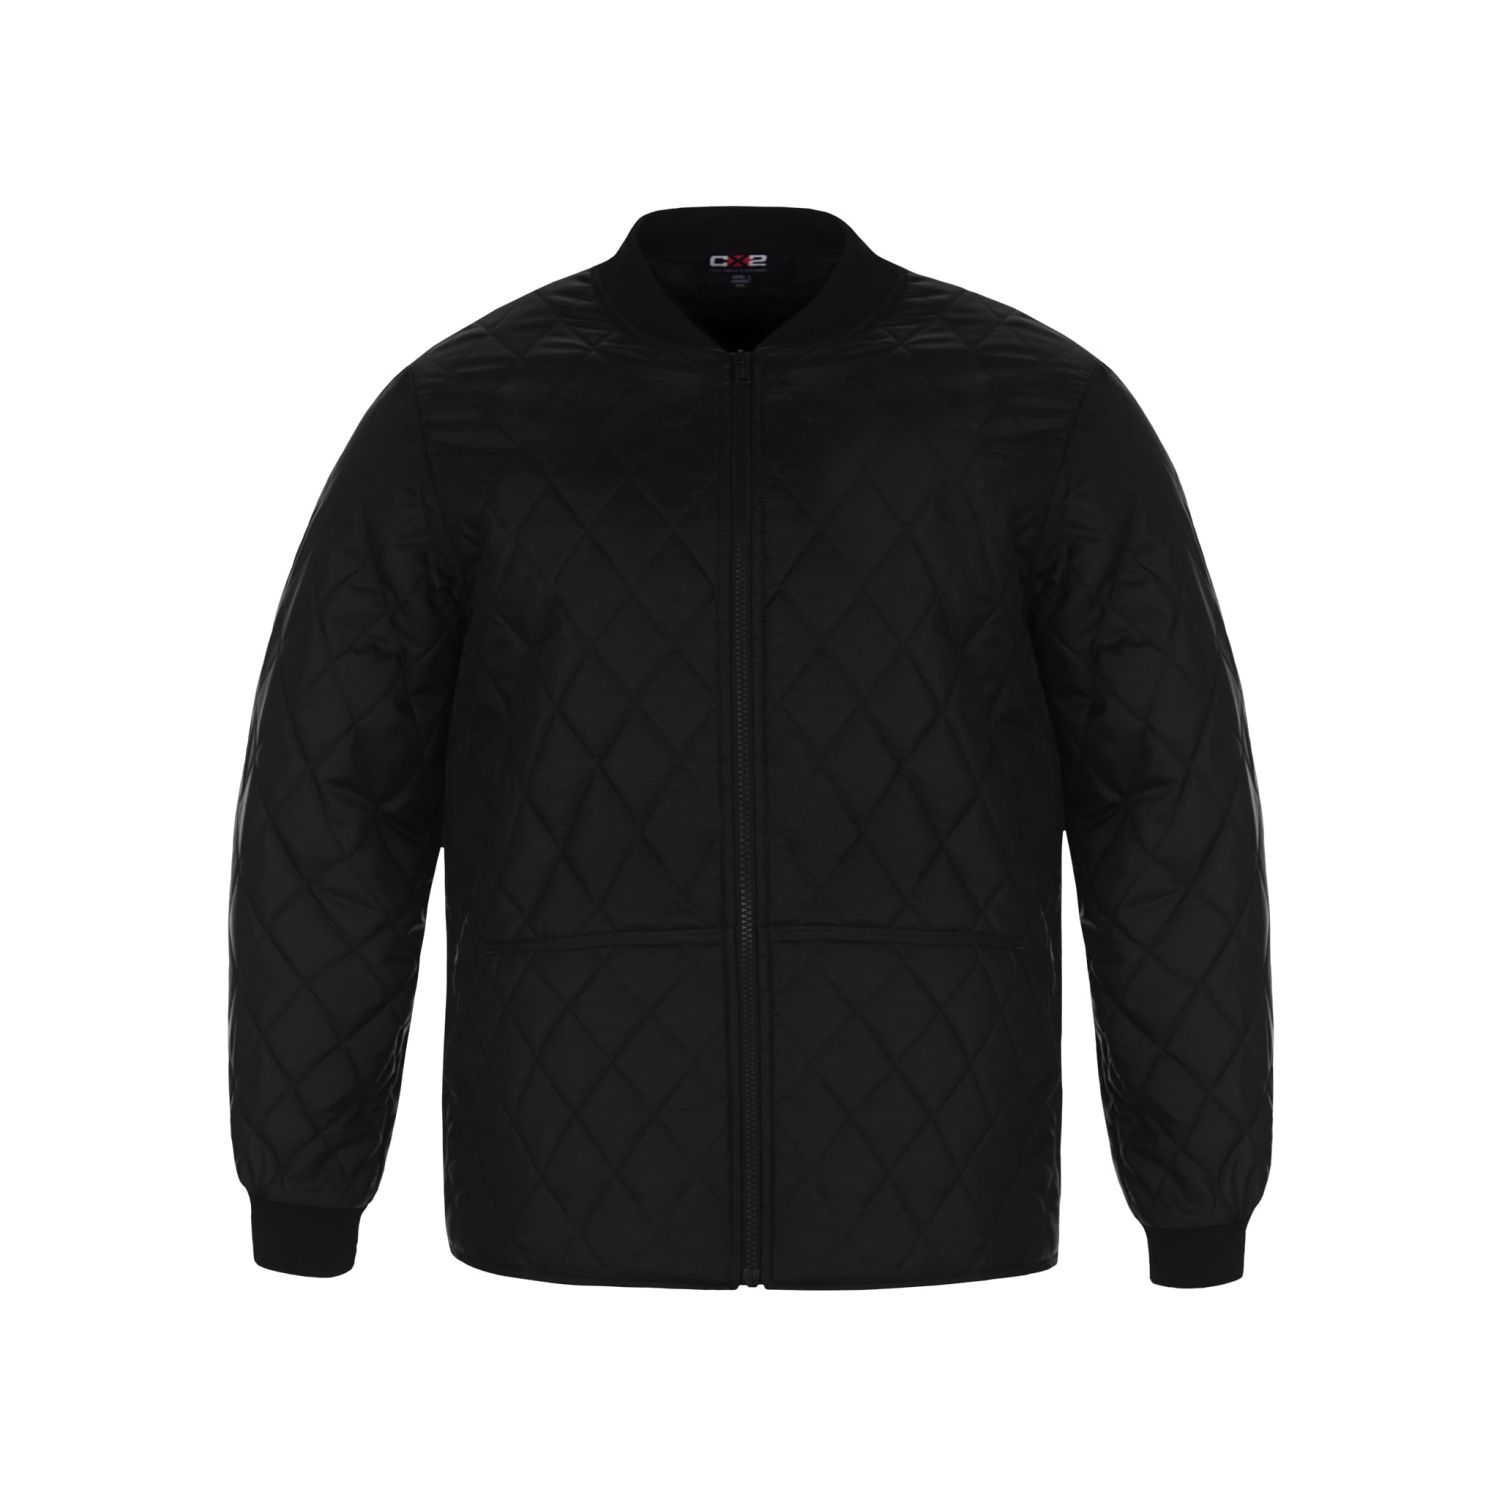 Canada Sportswear FREEZER JACKET #L01025 Black